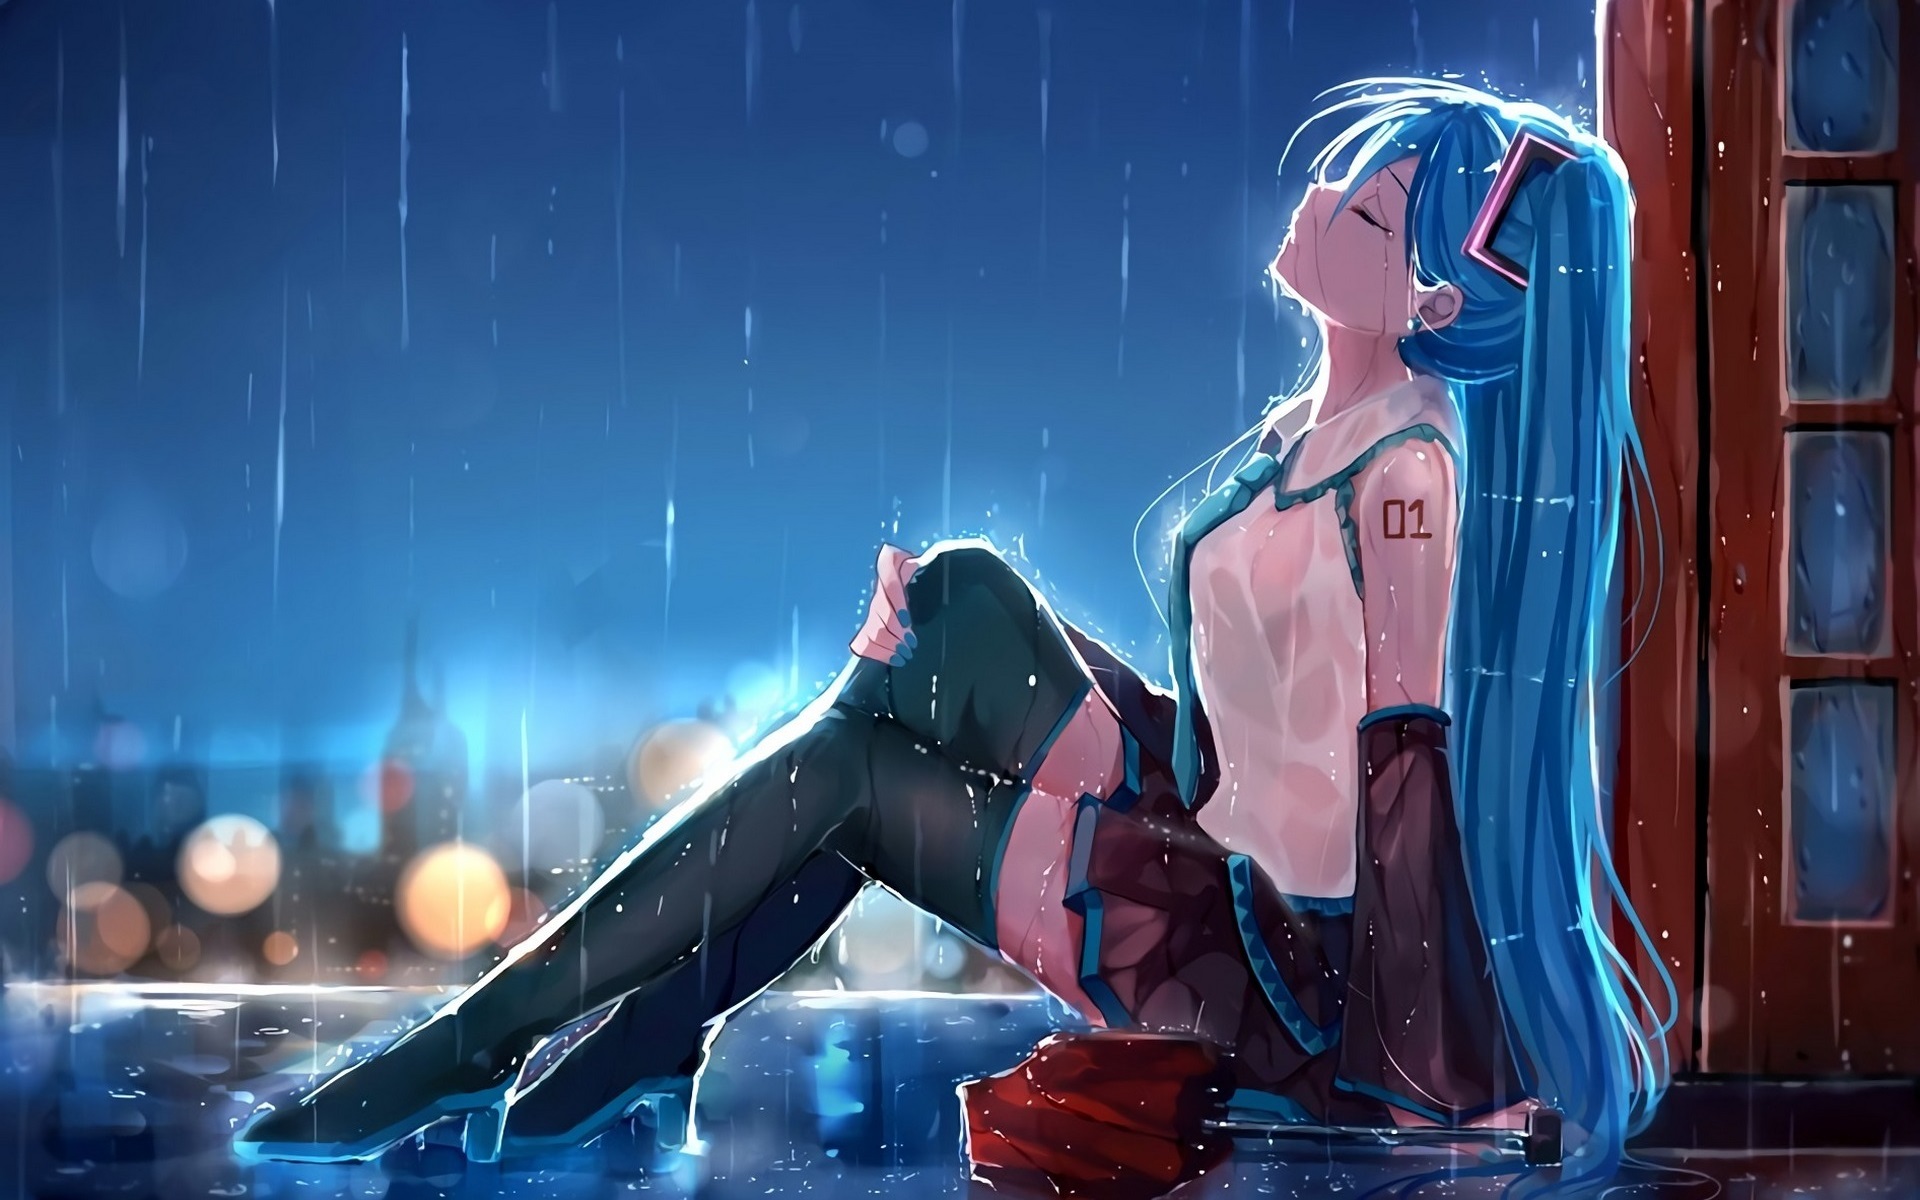 Hatsune Miku, sadness anime girl in rain wallpaper | anime | Wallpaper  Better